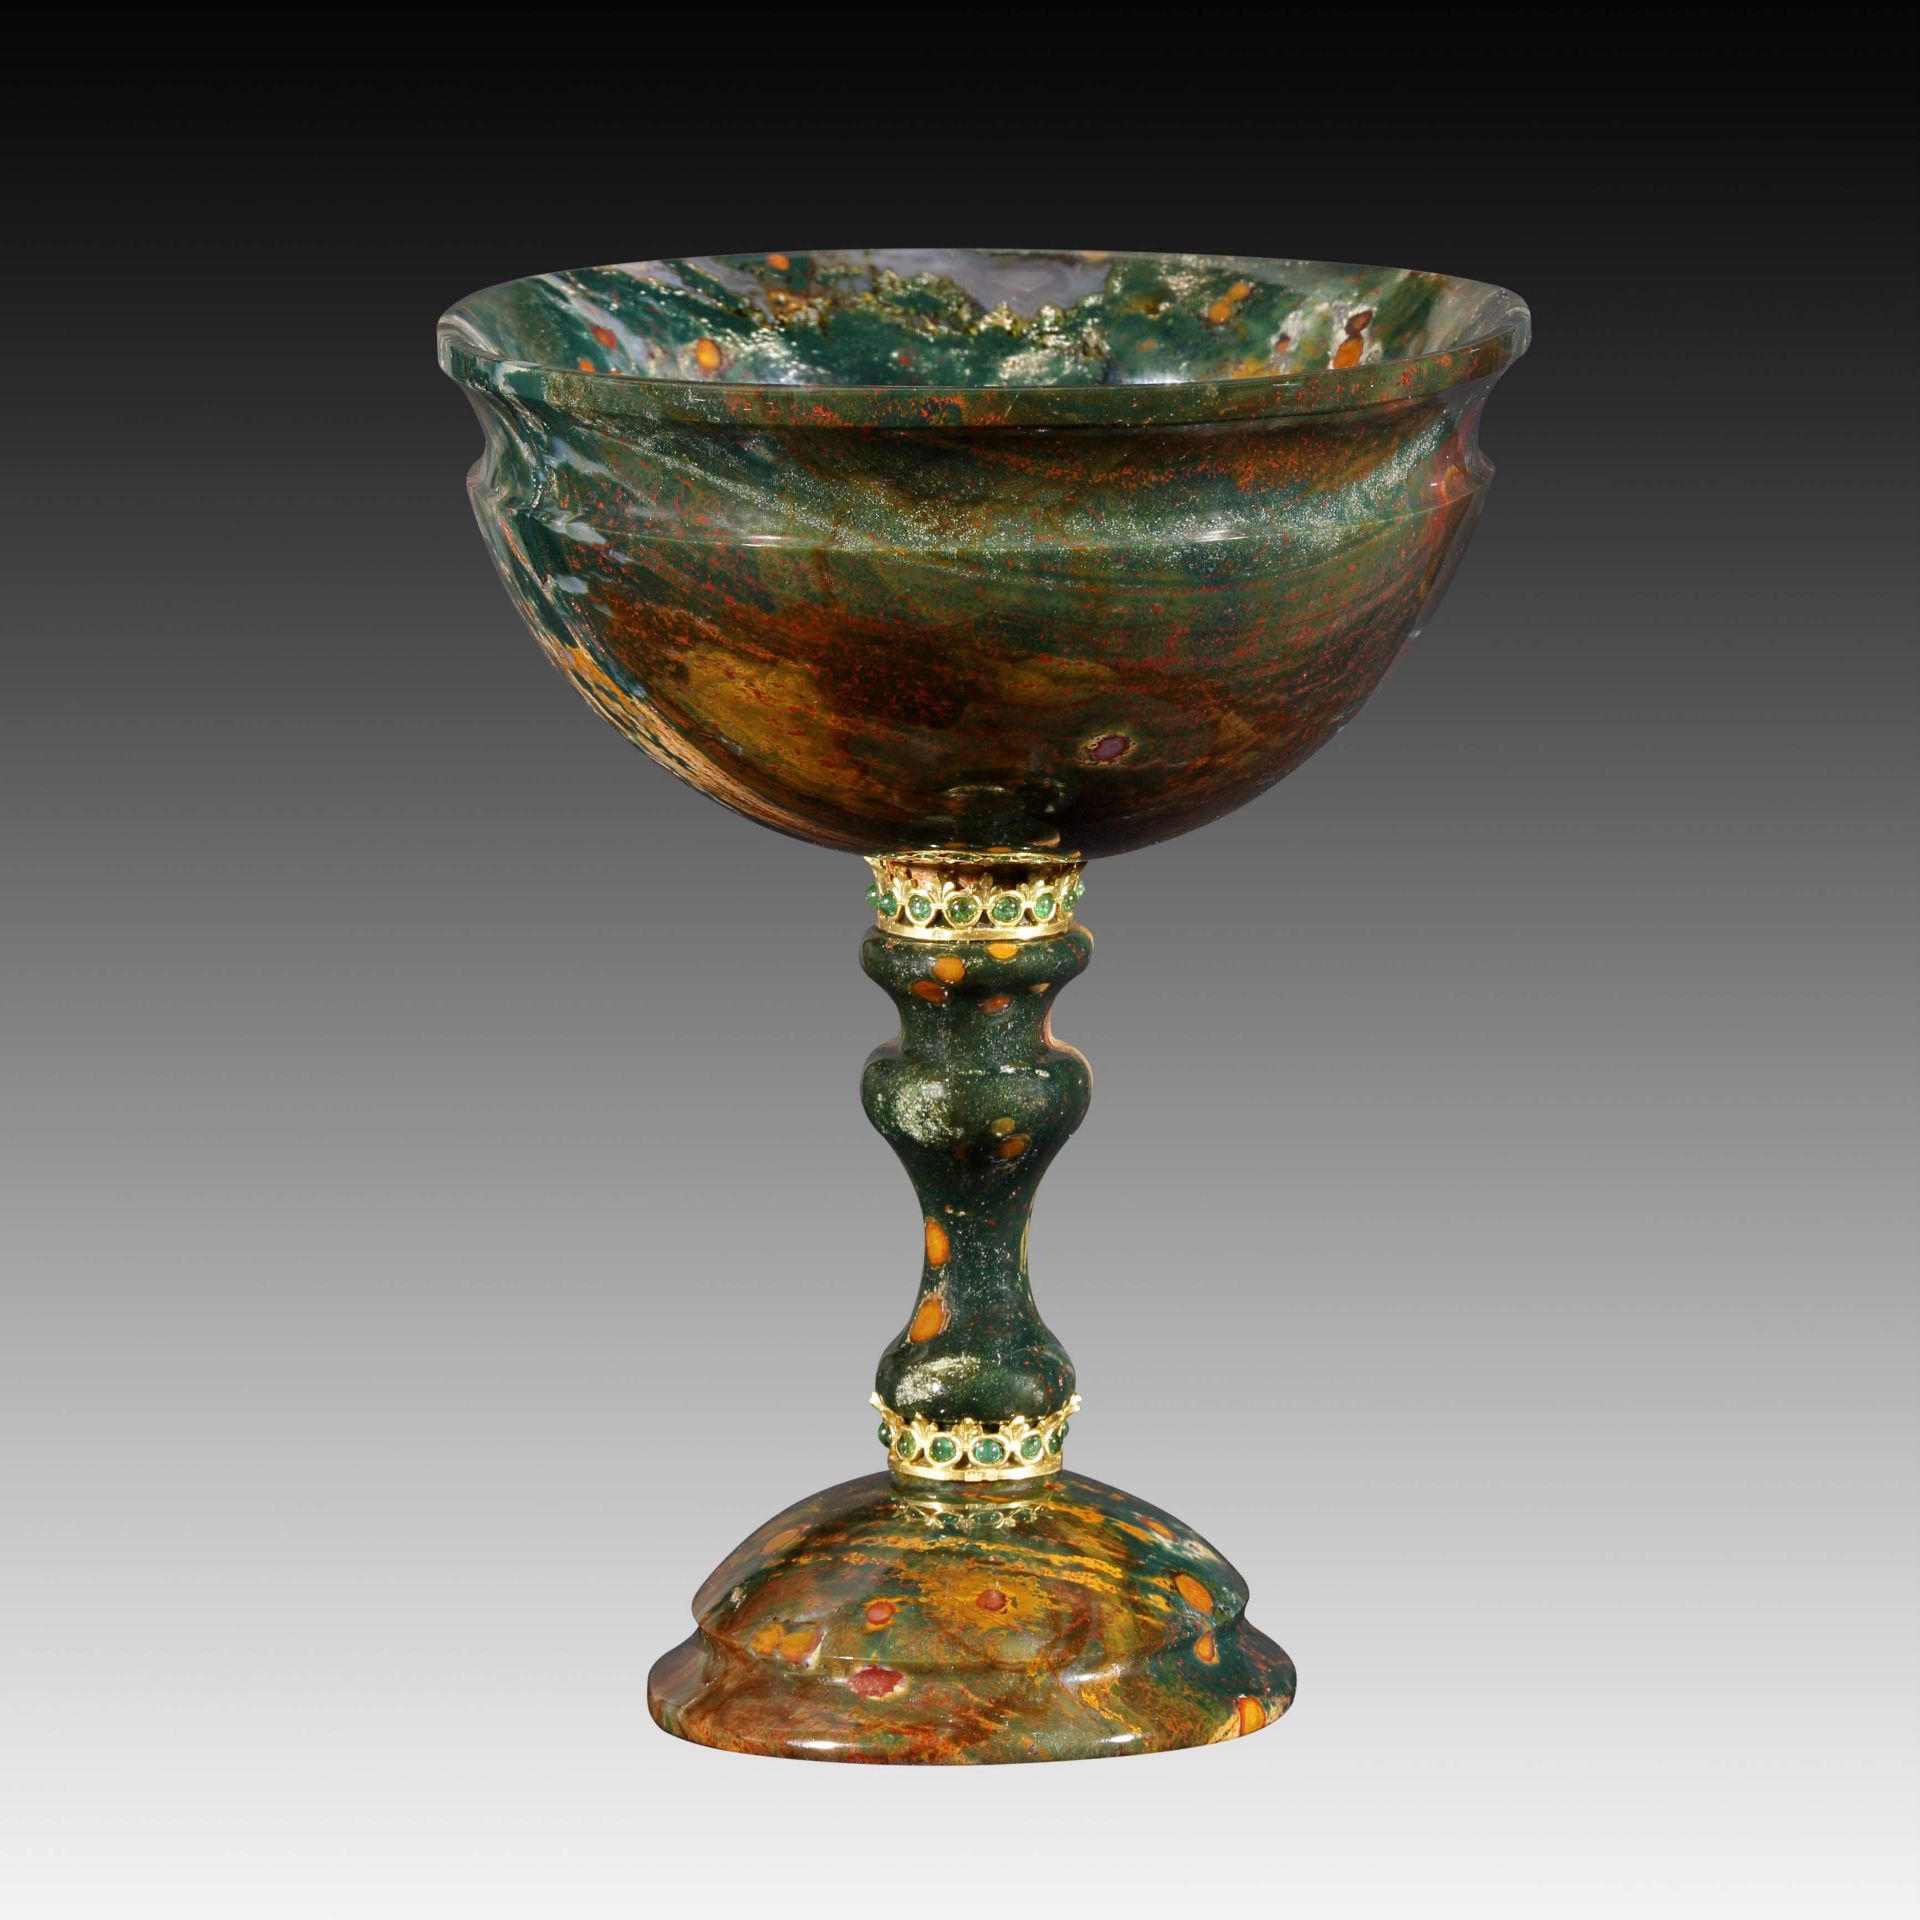 Ovaler Pokal aus grünem Jaspis - Kreation von Manfred Wild - Image 2 of 4